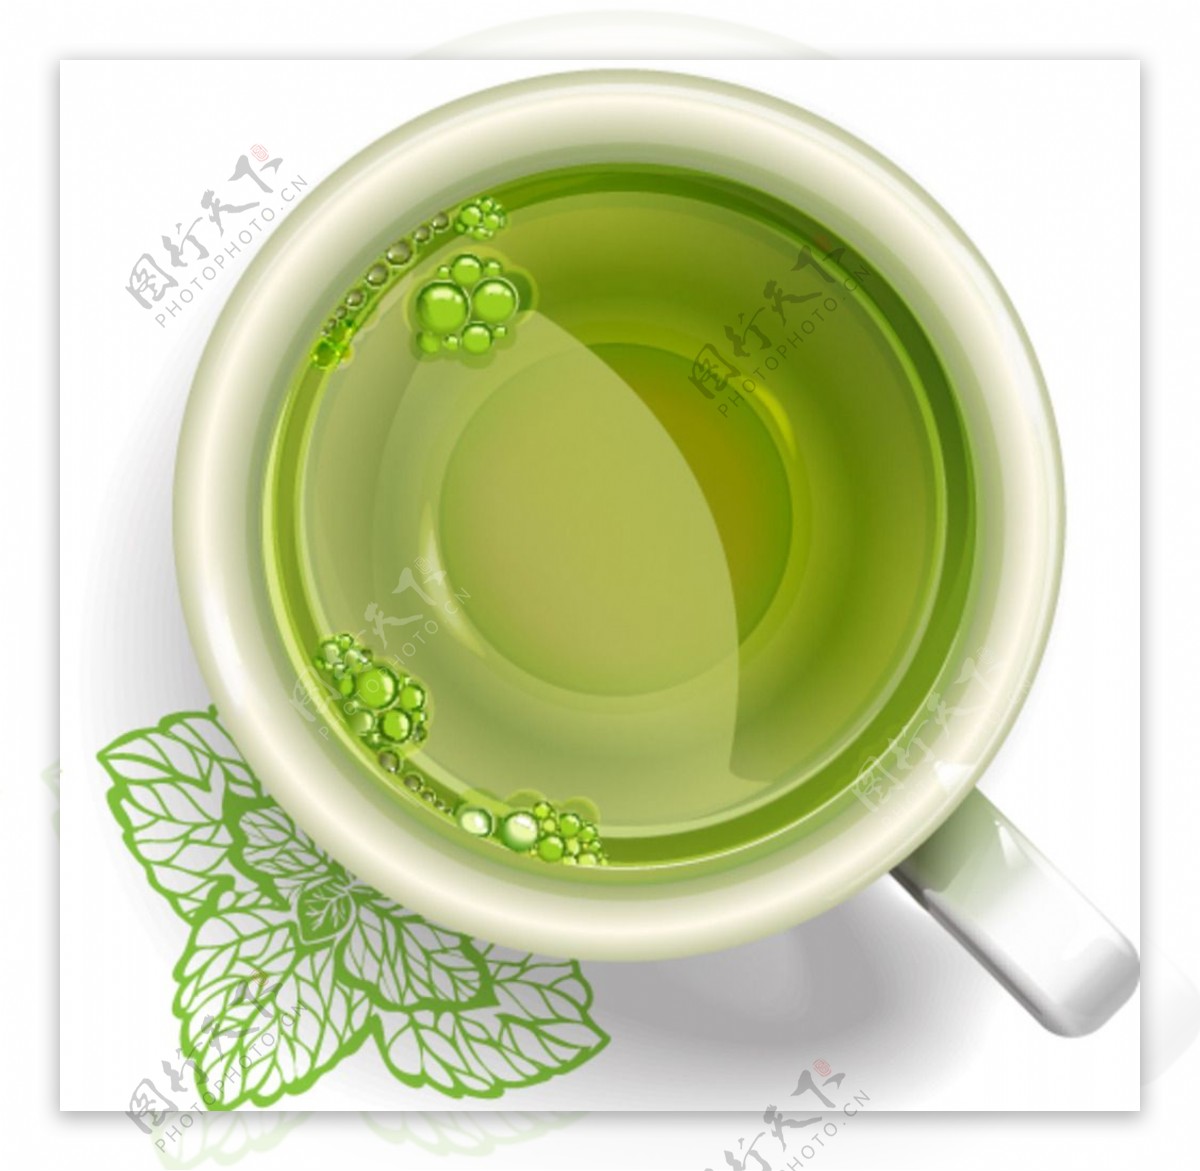 绿茶图片